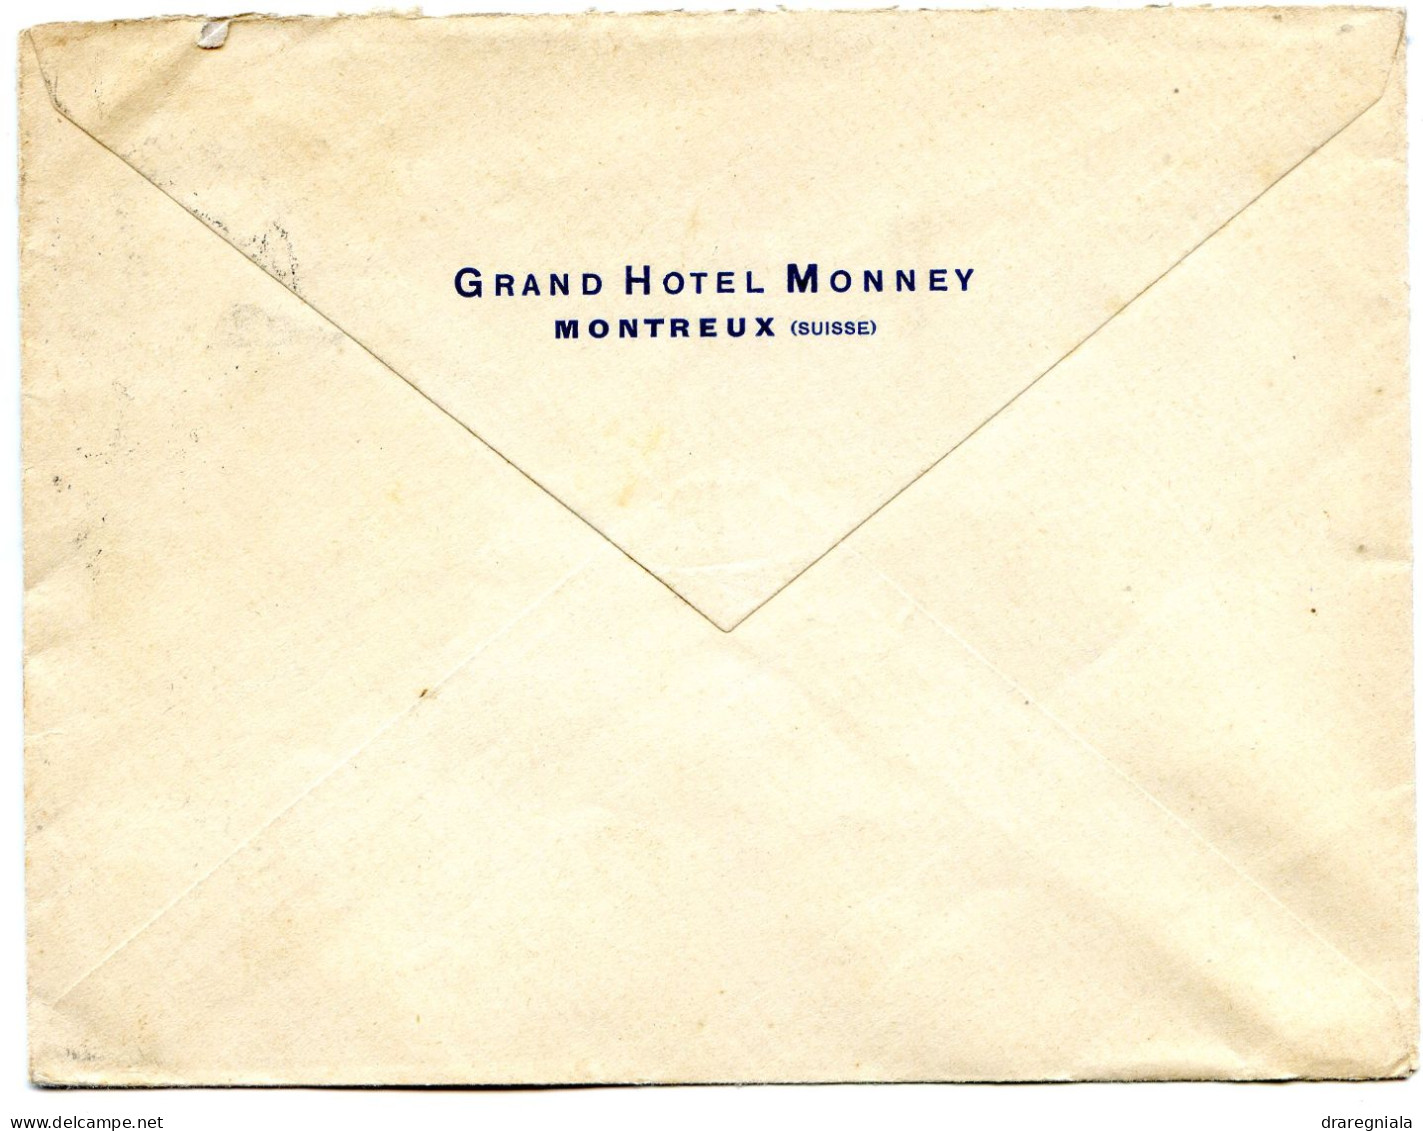 Mail Von Montreux 2 8 1930 - Tellbrustbild 160 - Grand Hotel Monney - Marcofilie